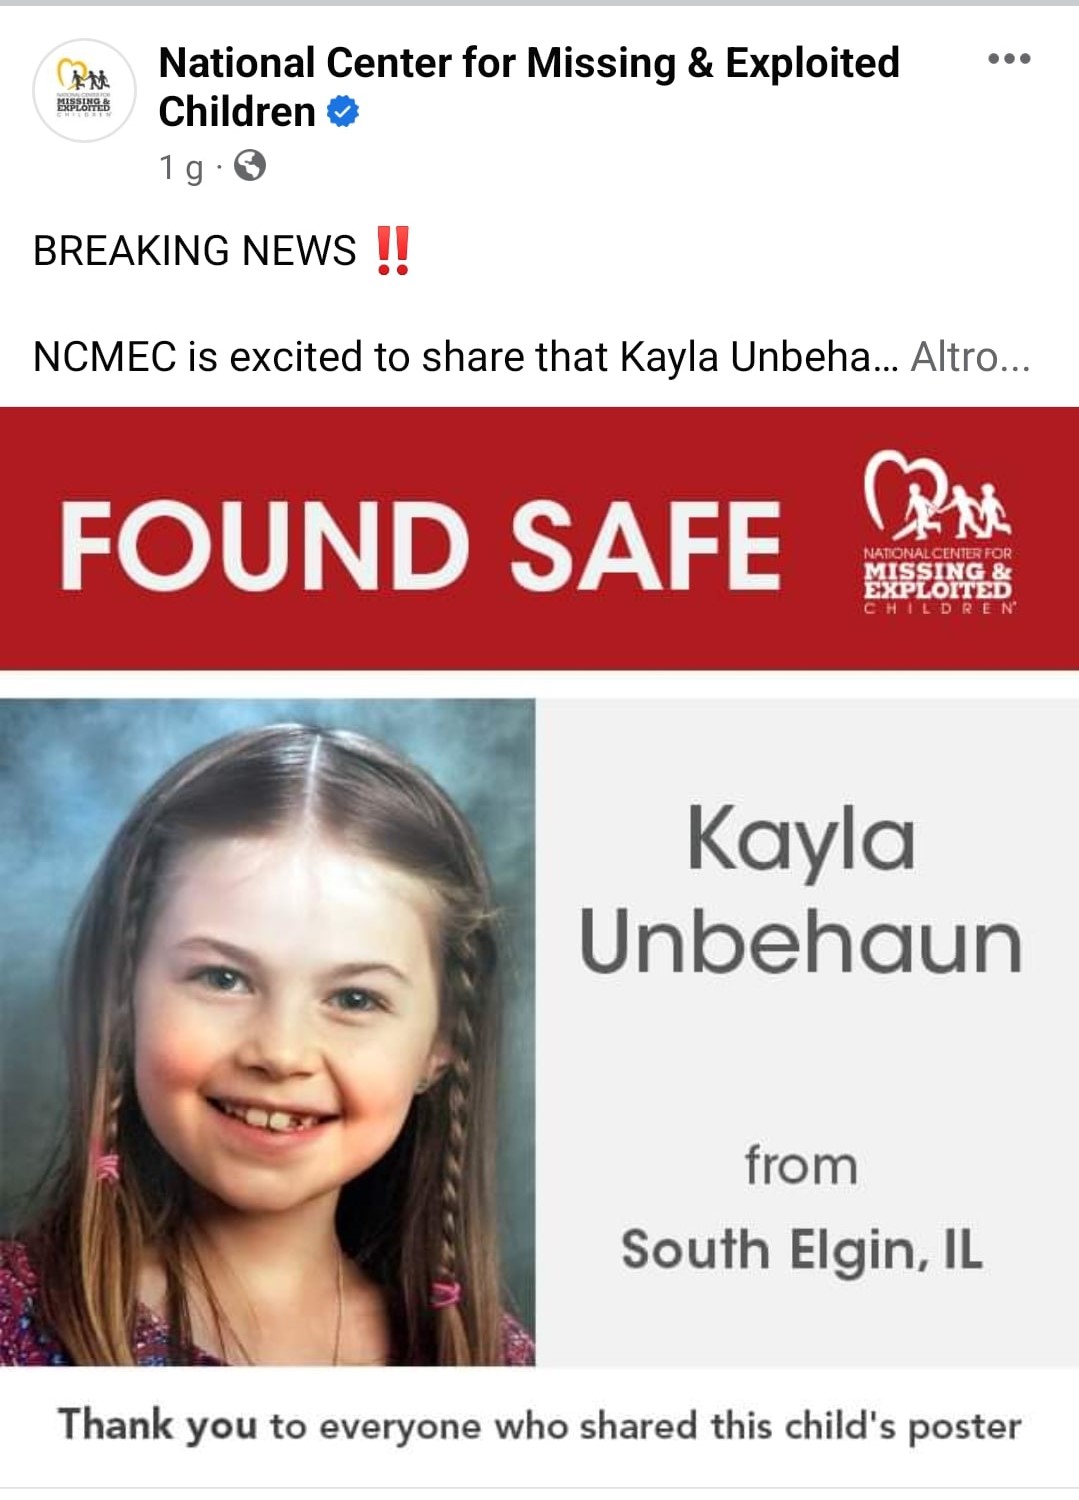 Il post con cui viene confermato il ritrovamento della bambina sparita nel 2017. Fonte: National Center for Missing & Exploited Children - Facebook.com